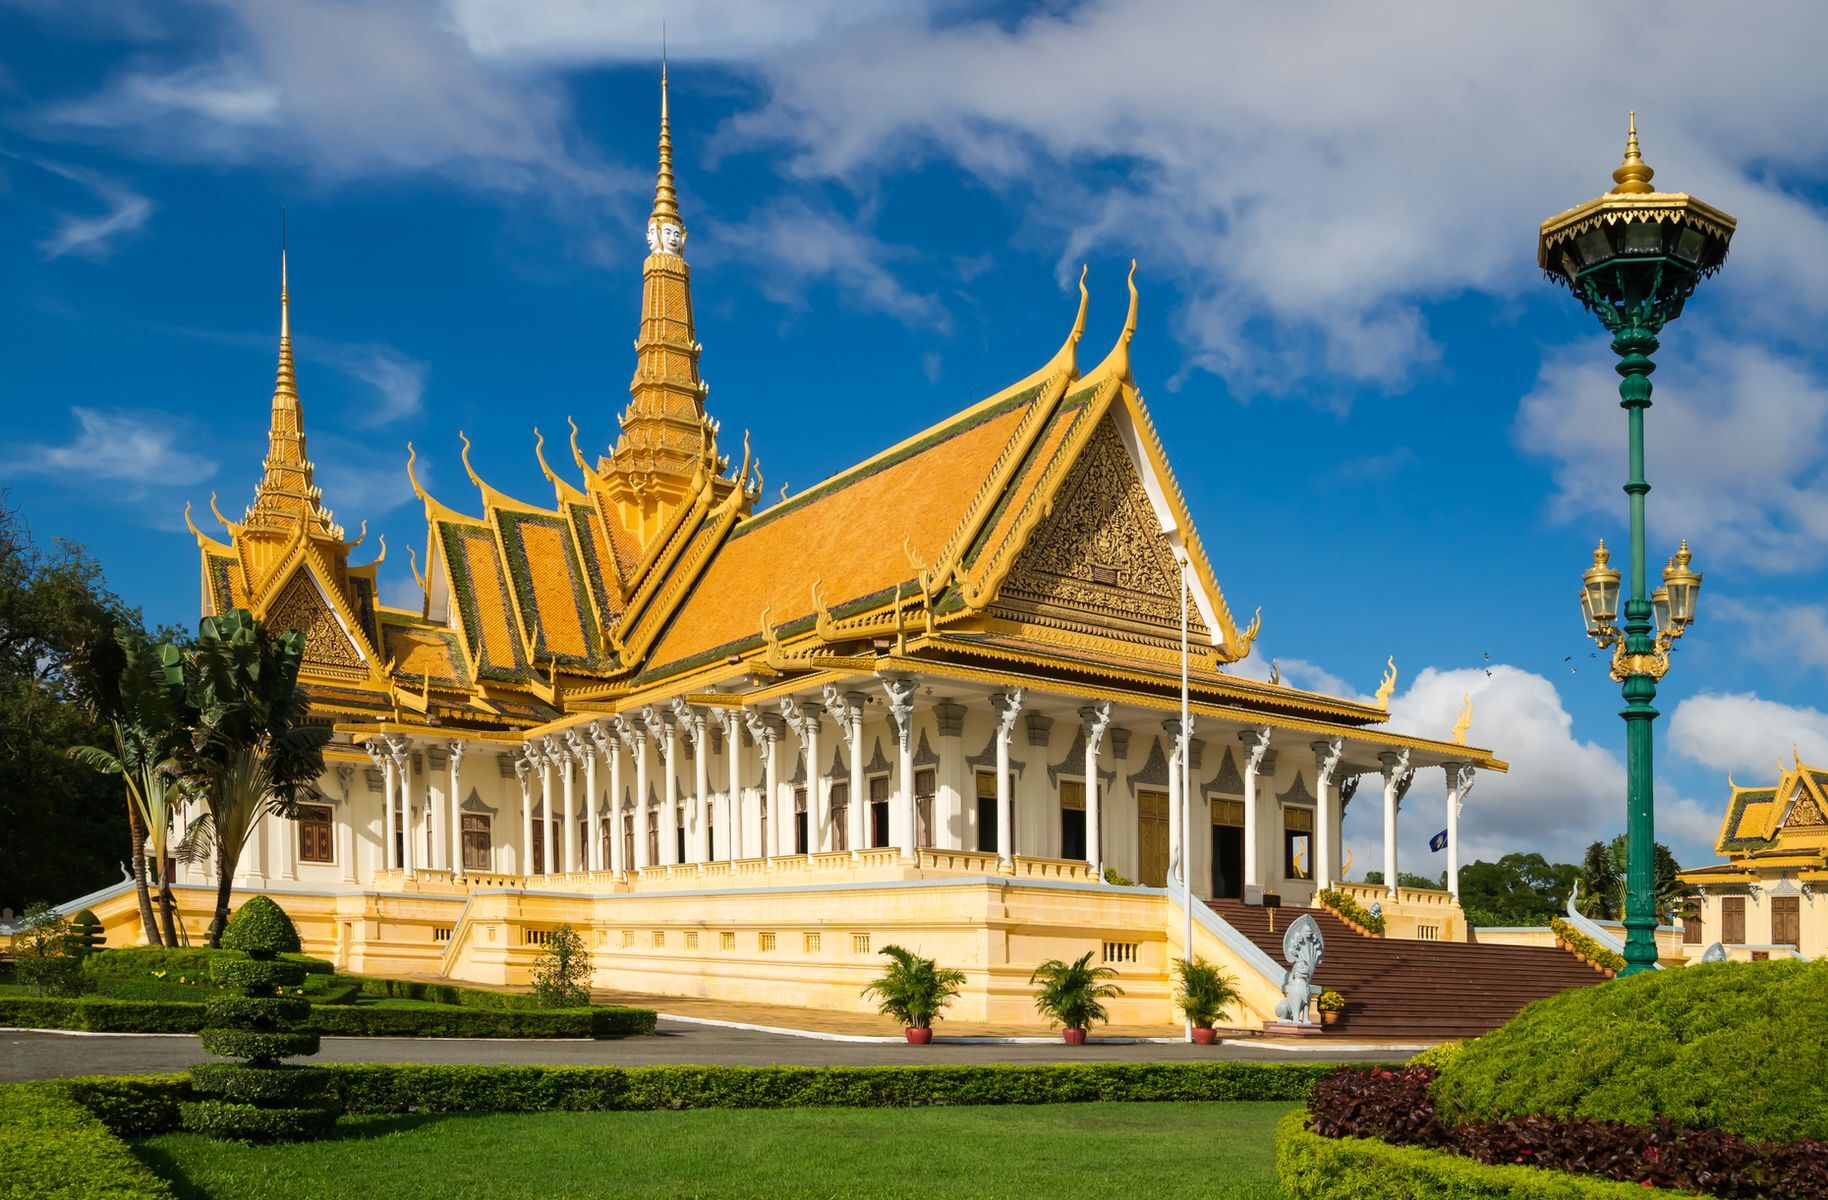 <p>Le Cambodge est une <a href="https://vietnamdecouverte.com/voyage-cambodge-prix">destination économique</a>, car les vols pour s’y rendre sont généralement peu coûteux, surtout en basse saison. Le pays faisait autrefois partie de l’empire colonial français, et cet héritage est bien visible dans l’architecture de nombreuses bâtisses de sa capitale, Phnom Penh. <a href="https://authentikvietnam.com/palais-royal-phnom-penh-5-choses-a-voir">Le palais royal</a>, un complexe de bâtiments érigés sur plusieurs décennies à partir des années 1860, est toutefois représentatif de la culture khmère. Résidence actuelle du roi du Cambodge, il est ouvert aux visites lorsque le souverain ne s’y trouve pas pour la modique somme de 40 000 riels (<a href="https://exchangerate.guru/khr/usd/40000/">10 $US</a>). Les adeptes de la culture pourront en apprendre davantage sur cette civilisation au <a href="https://www.voyagecambodge.com/guide-cambodge/attraction/musee-national-cambodge">musée national du Cambodge</a>, qui présente l’une des plus grandes collections d’art khmer. Pour continuer à vous immerger dans l’ambiance du pays, le restaurant <a href="https://www.facebook.com/elevenonekitchen/">Eleven One Kitchen</a> vous propose de goûter à une cuisine cambodgienne savoureuse et authentique à petit prix.</p>